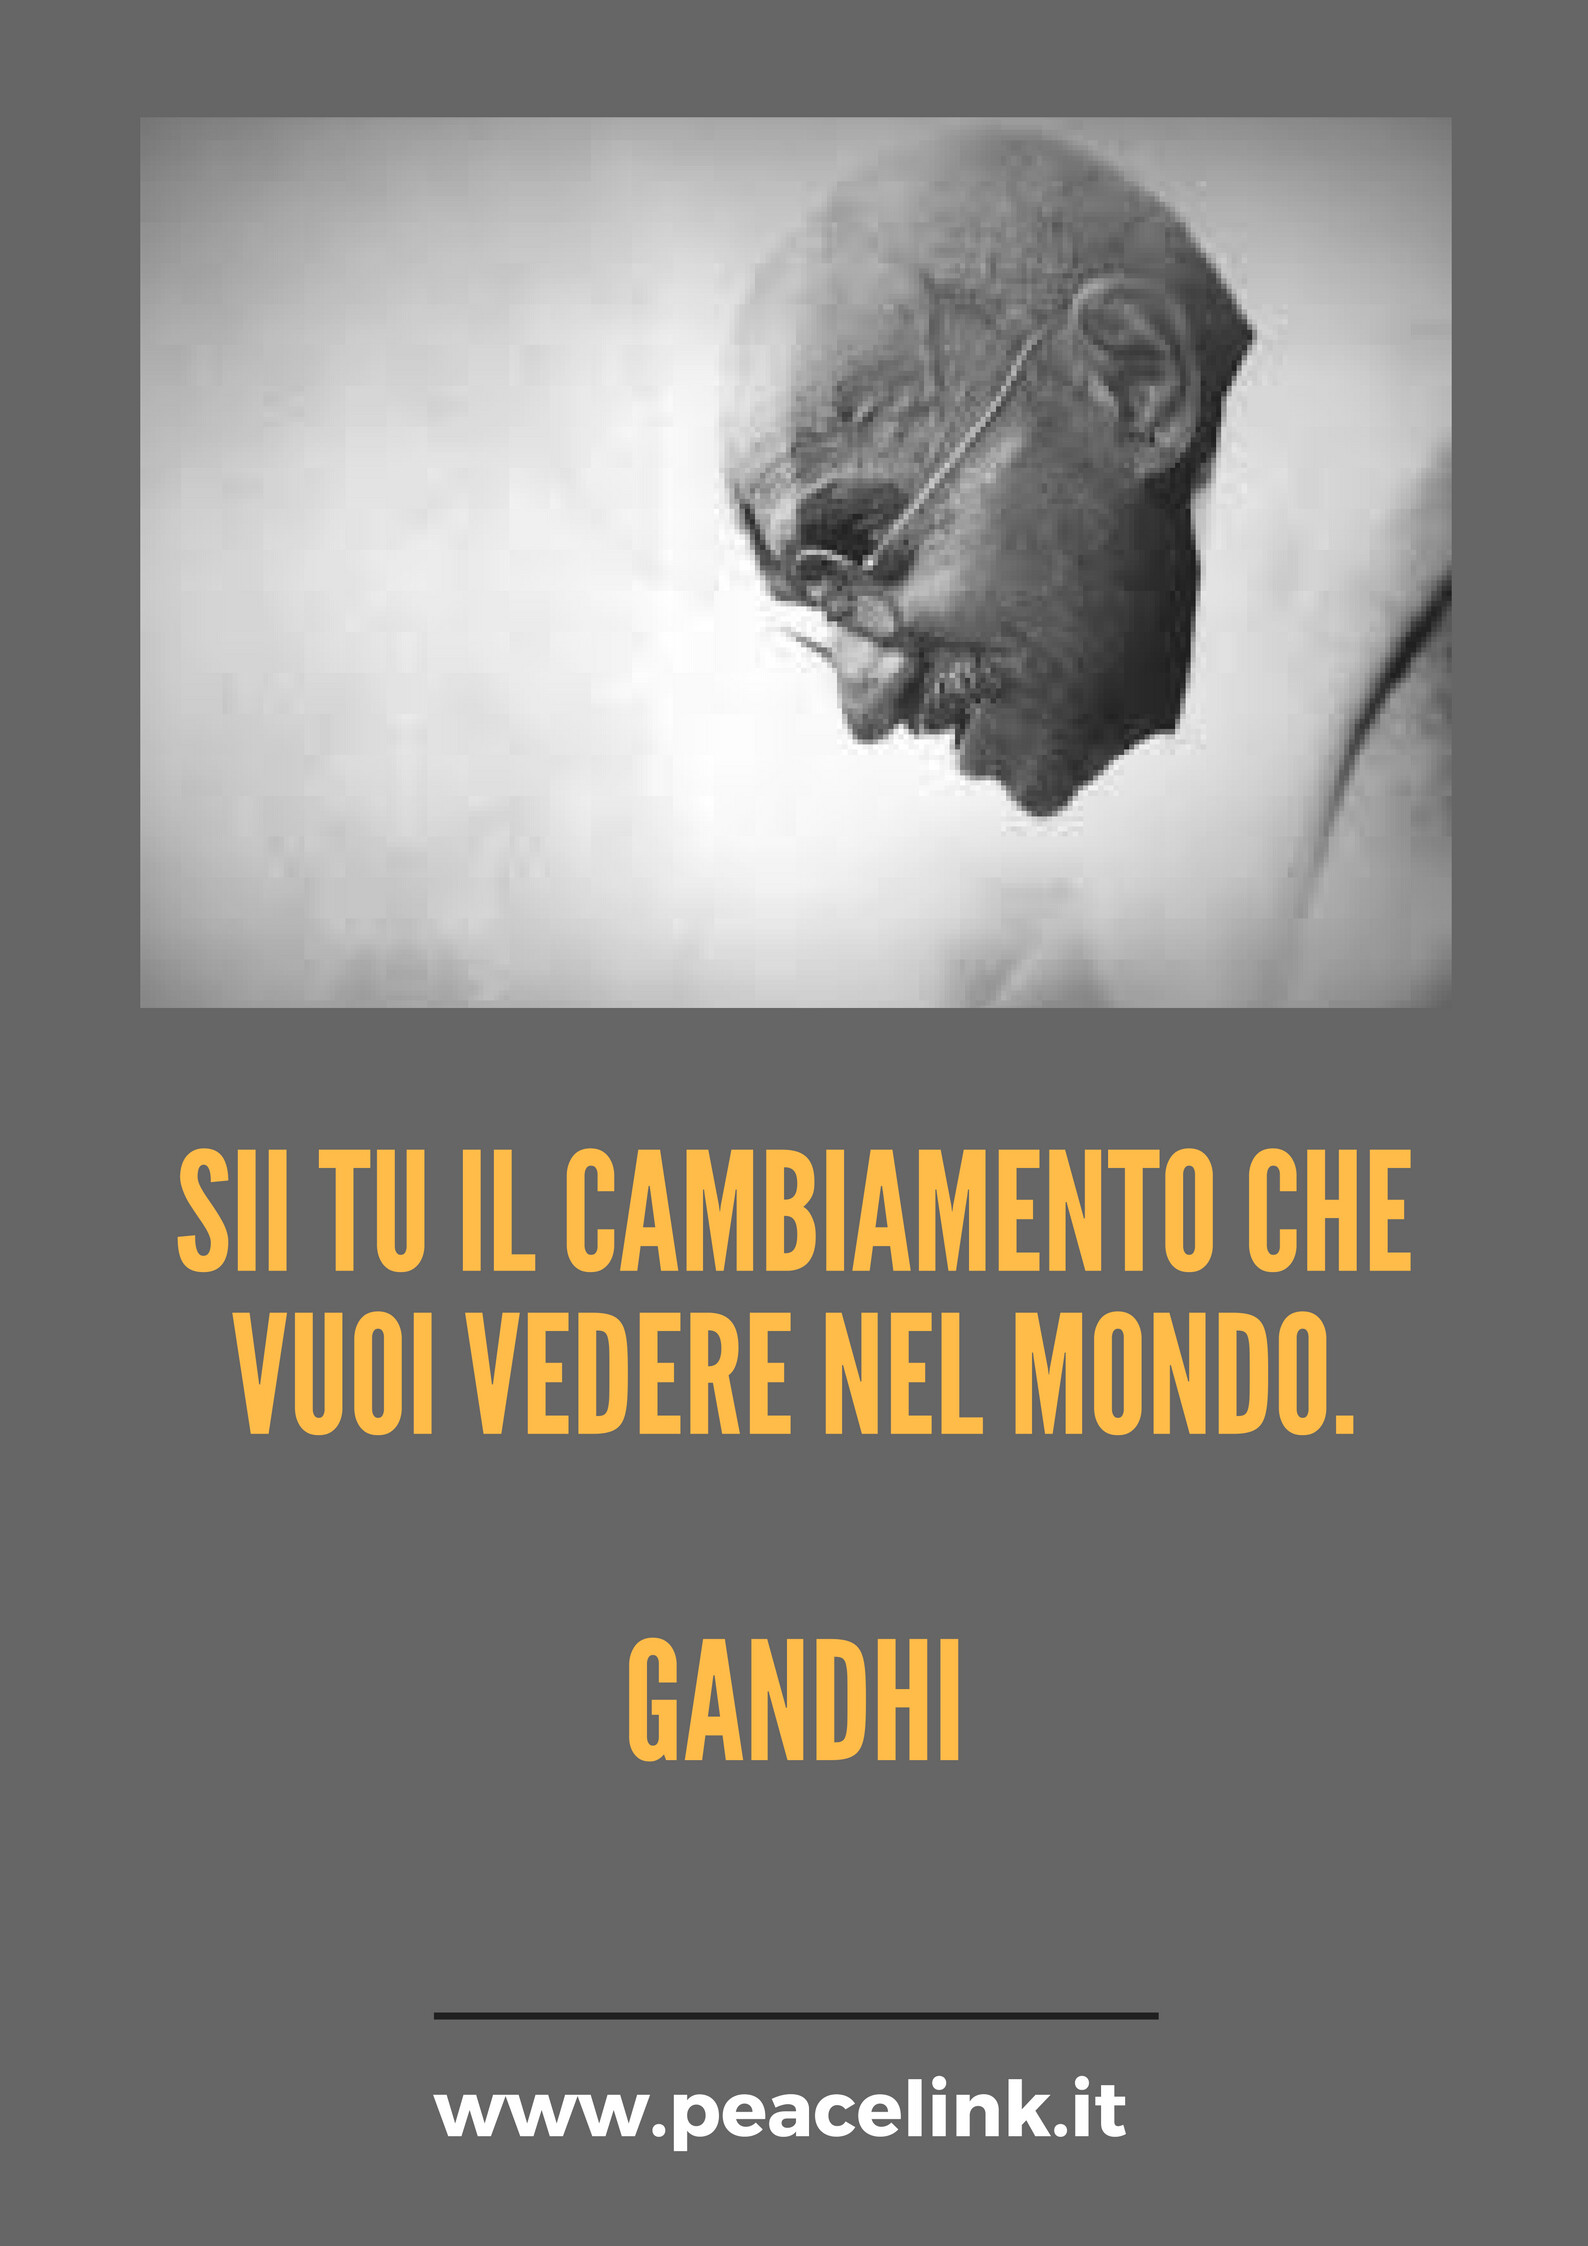 Gandhi: "Sii tu il cambiamento che vuoi vedere nel mondo".